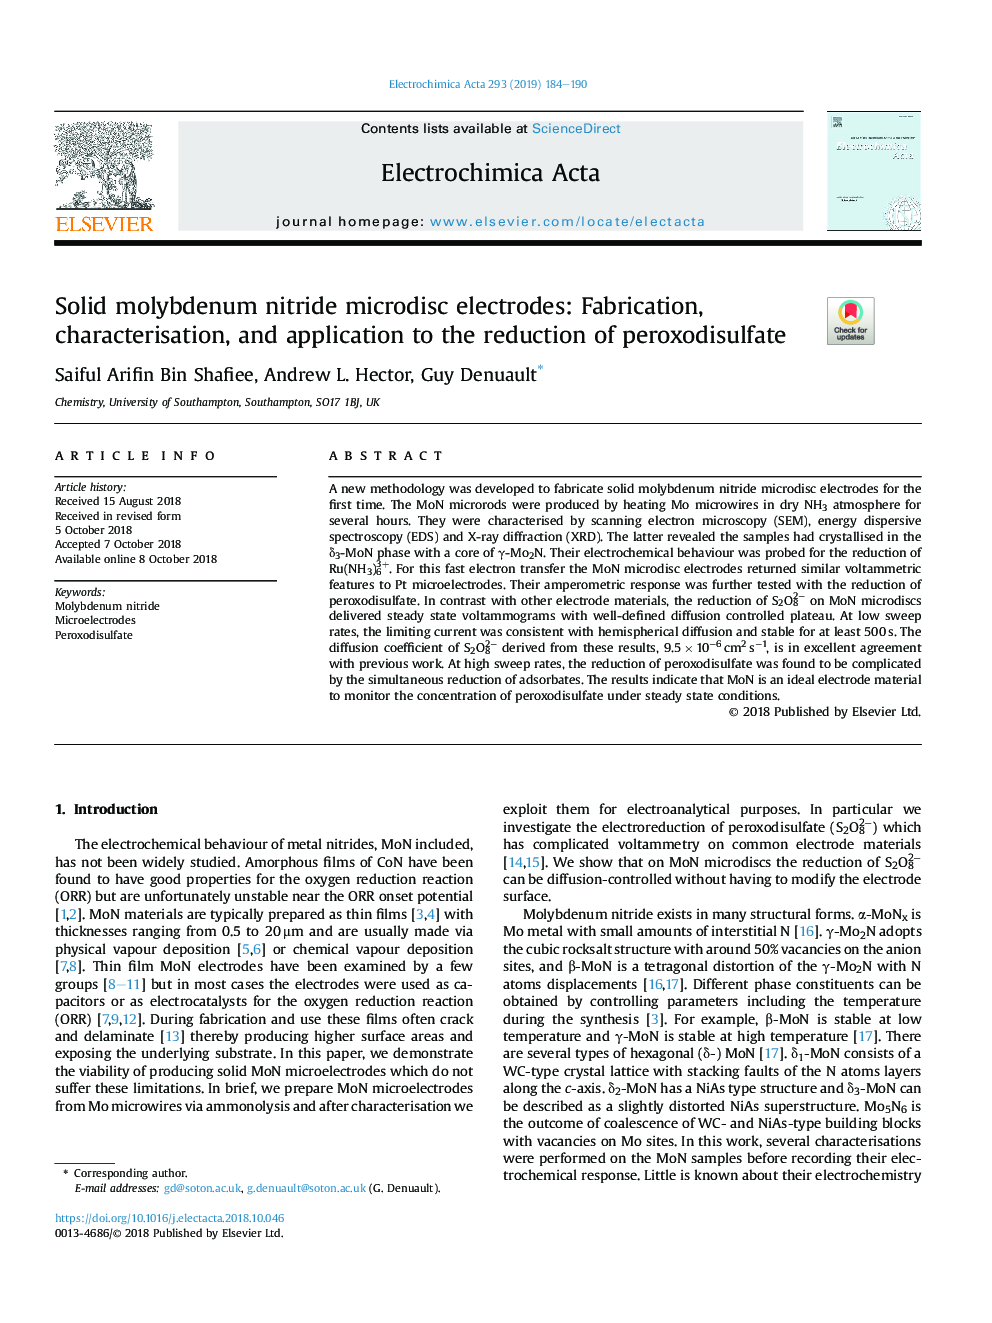 الکترودهای میکرو دیسیید مولیبدن مولیبدن: ساخت، مشخص کردن، و کاربرد در کاهش پراکسیدسیولفات